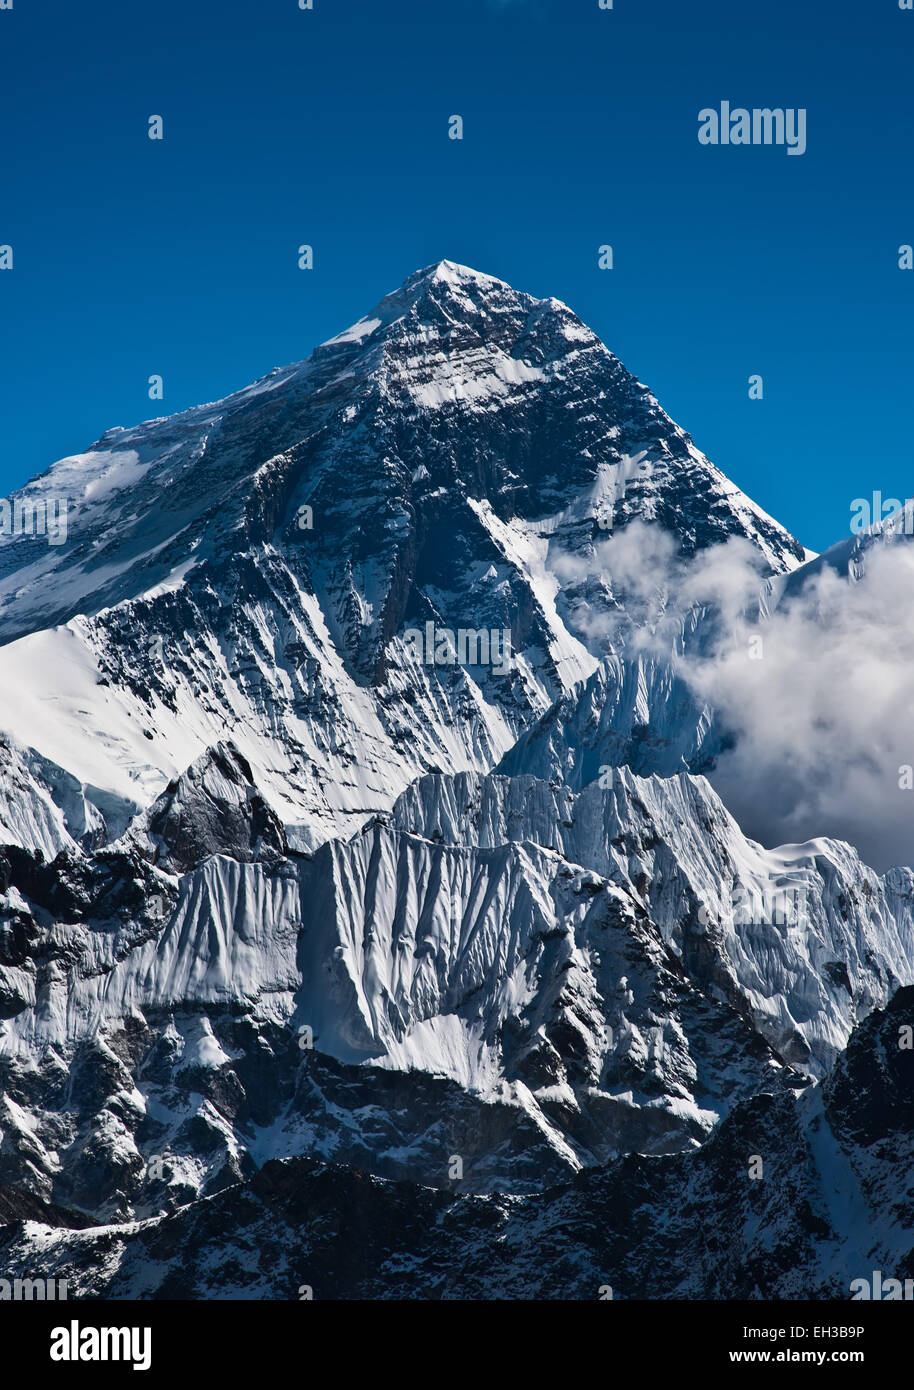 everest-mountain-peak-or-sagarmatha-with